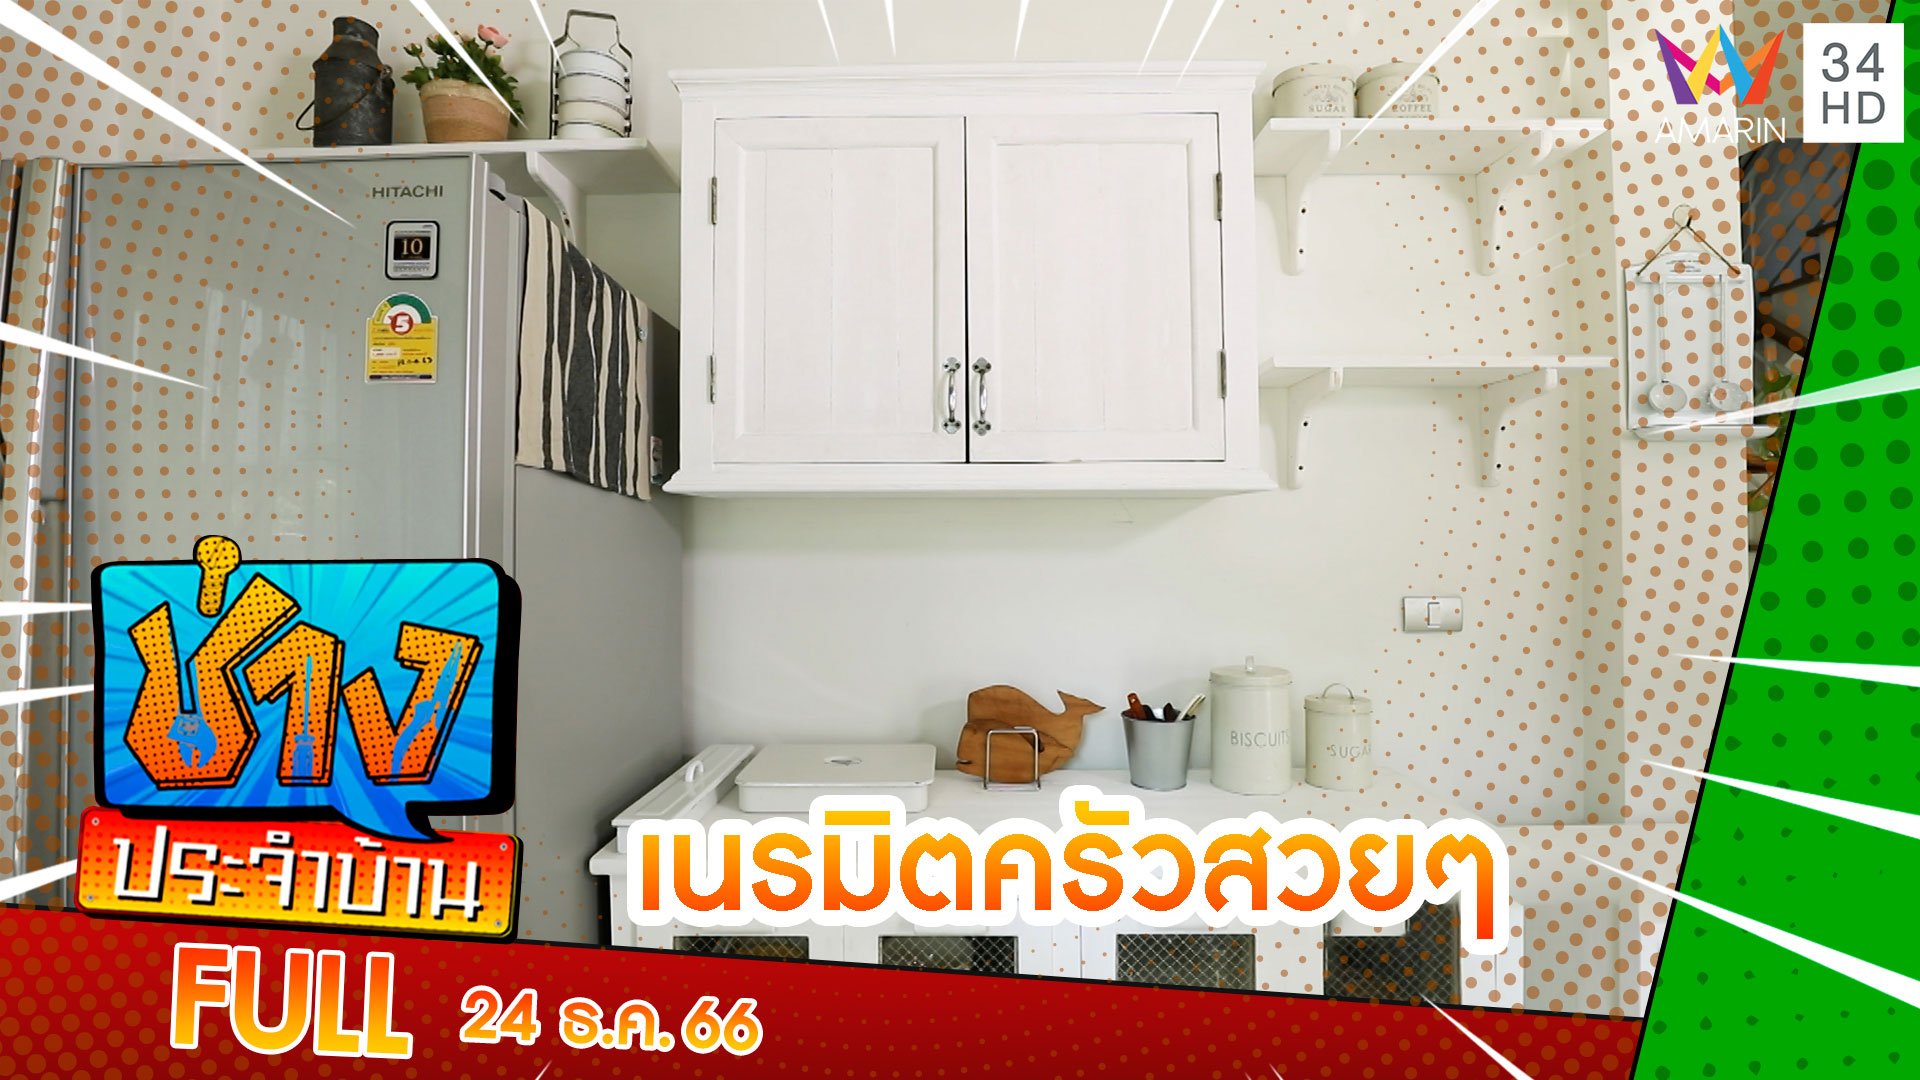 เนรมิตและซ่อมแซมครัว | ช่างประจำบ้าน | 24 ธ.ค. 66 | AMARIN TVHD34